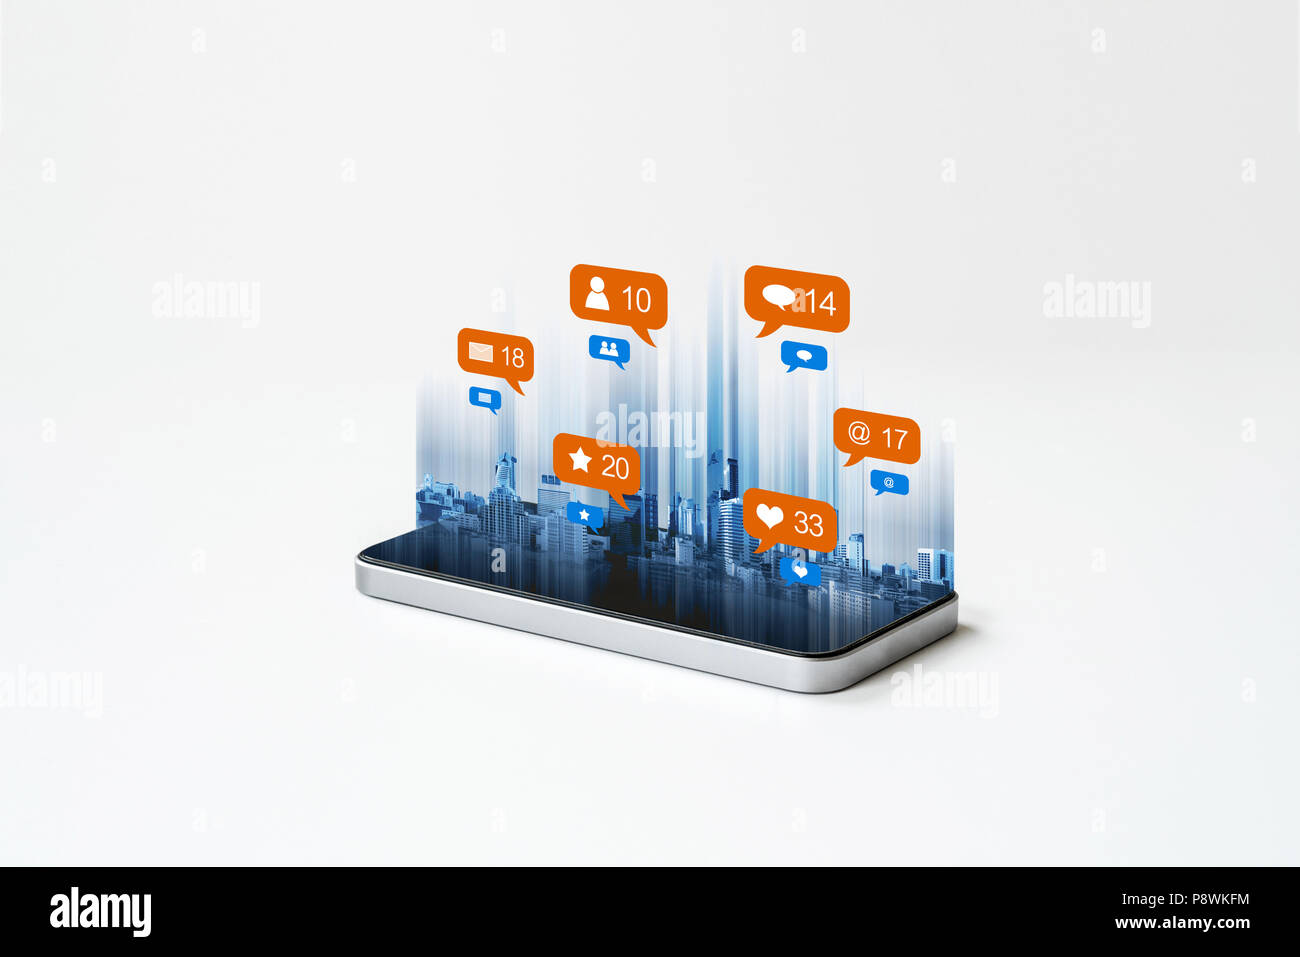 Mobile smart phone technology, con i social media, rete sociale icone di notifica. su sfondo bianco Foto Stock